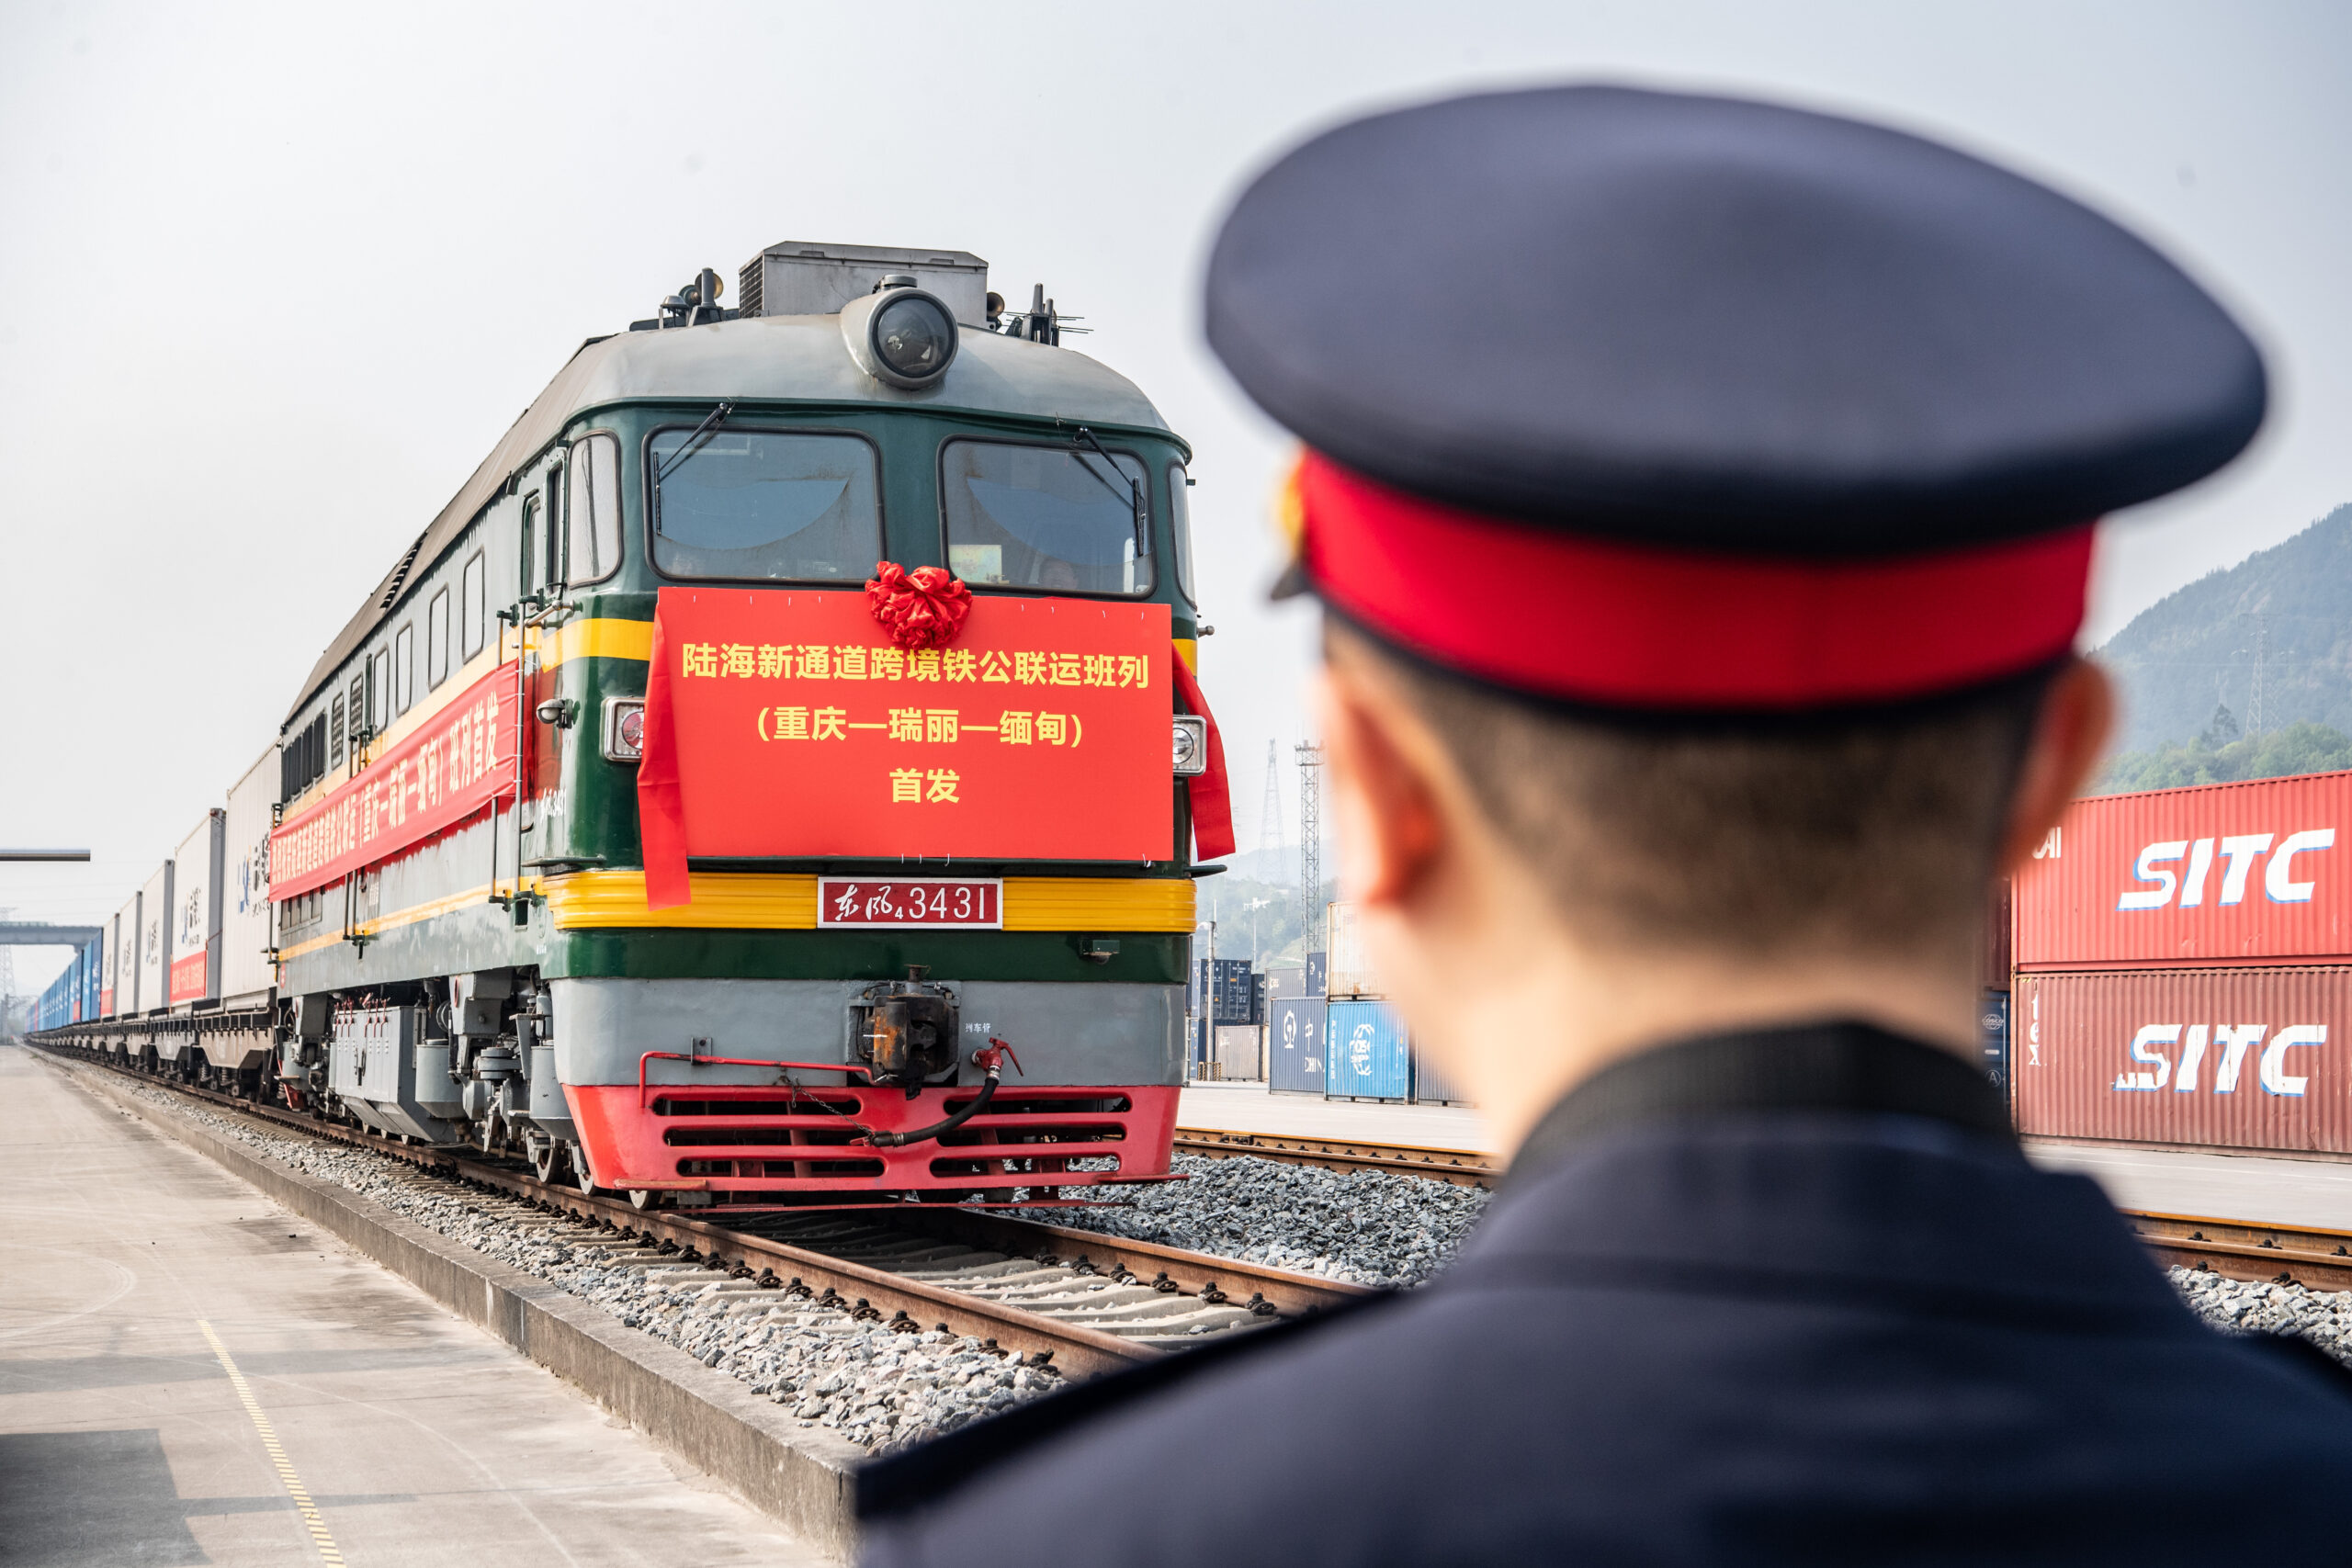 จีนเปิดขนส่งสินค้า 'ทางรถไฟ-ทางหลวง' สายใหม่ ผ่านระเบียงการค้าบก-ทะเล